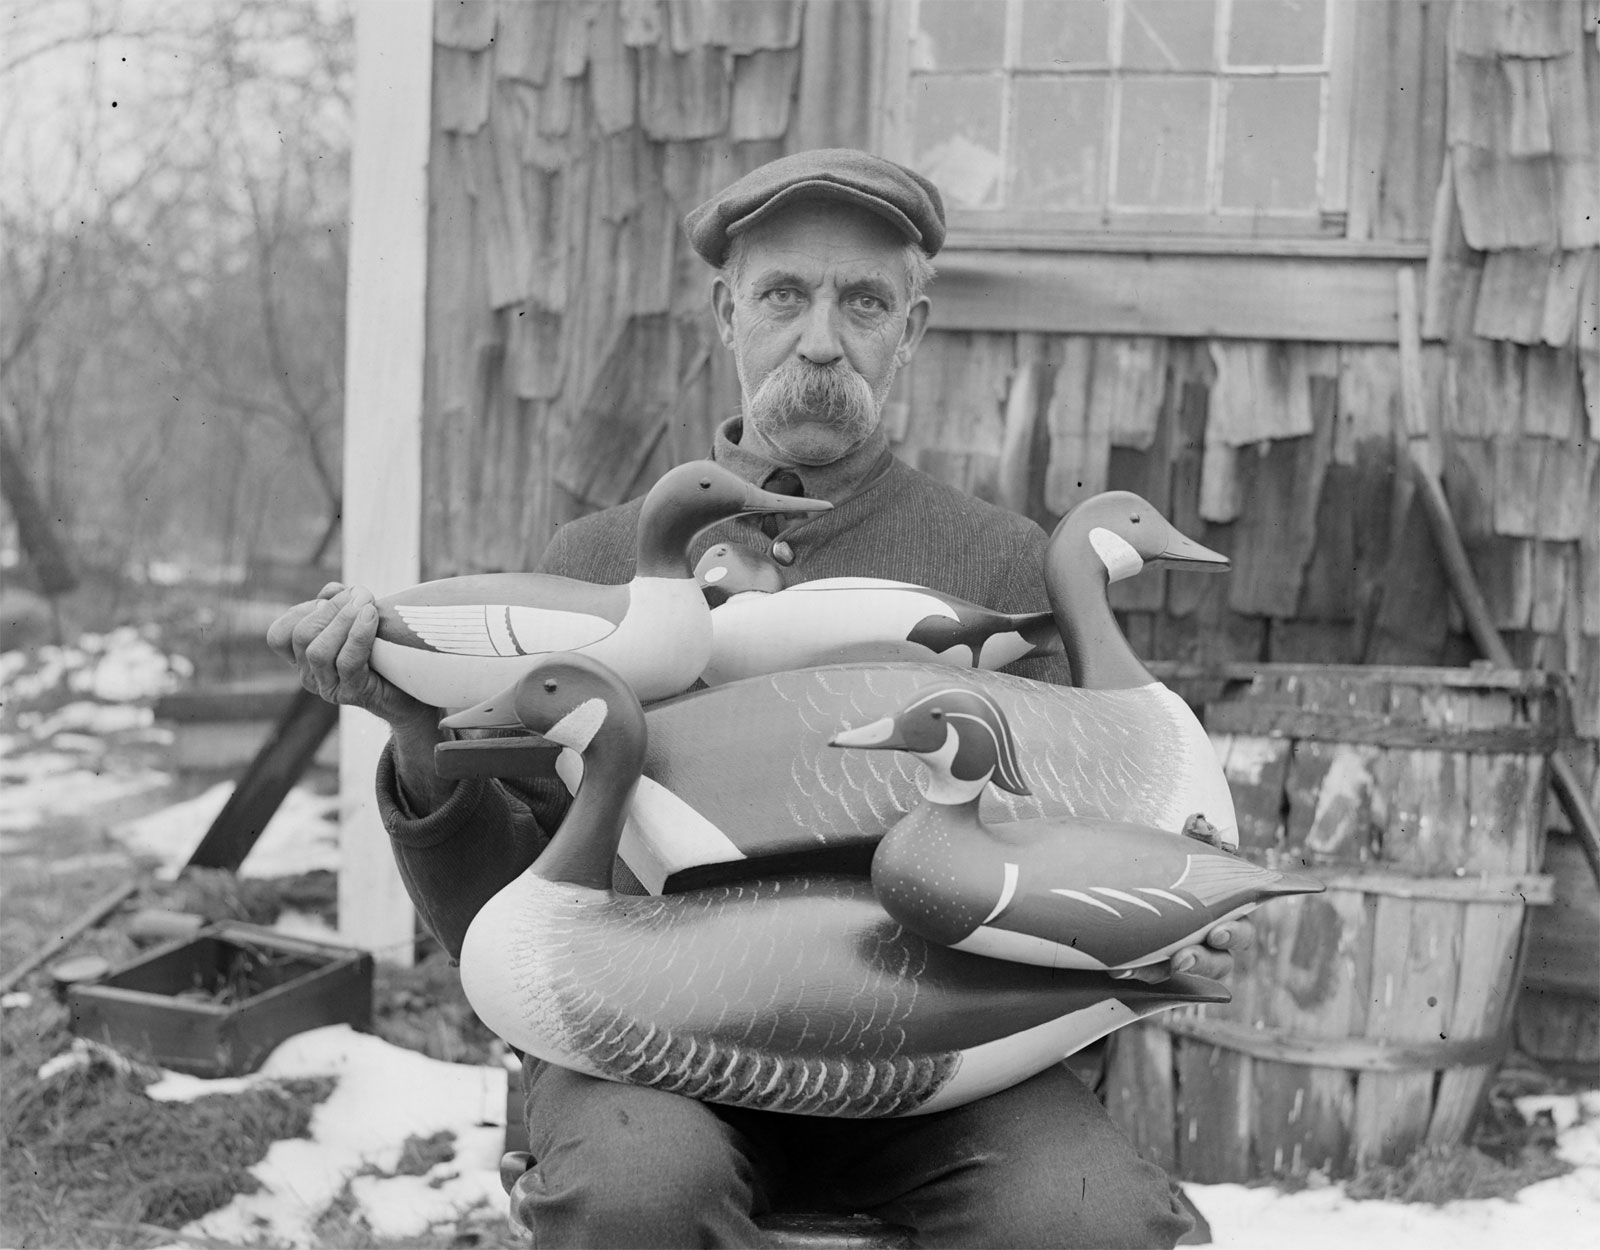 Joe Lincoln de Accord, campeón de fabricación de señuelos de Nueva Inglaterra, 1926.